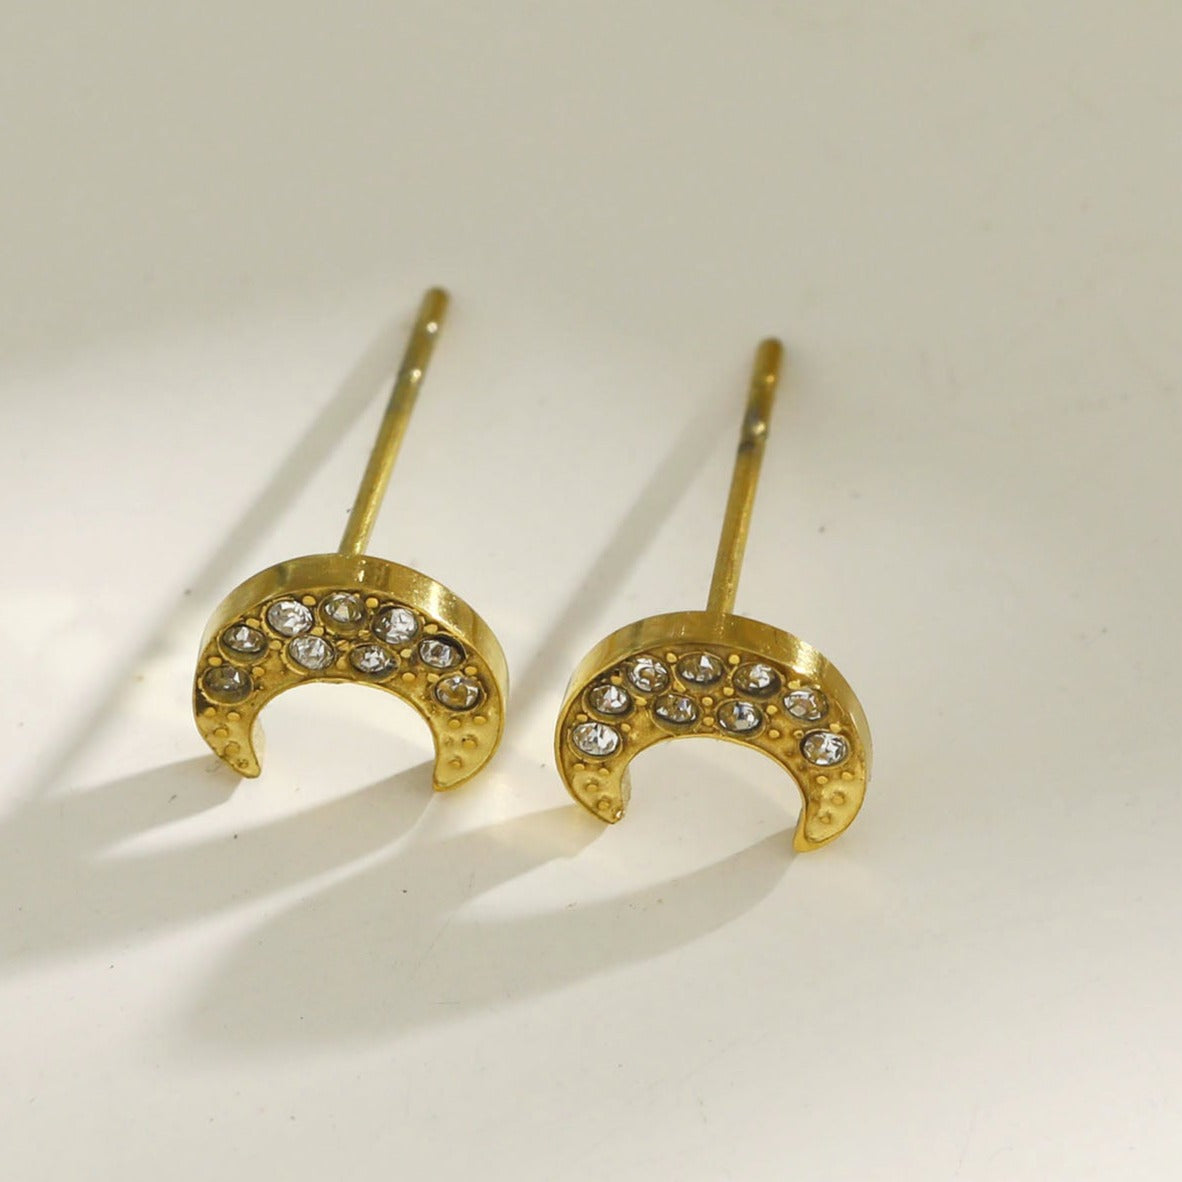 AISLEY Crescent Moon Stud Earrings Embellished with Zirconia Gemstones